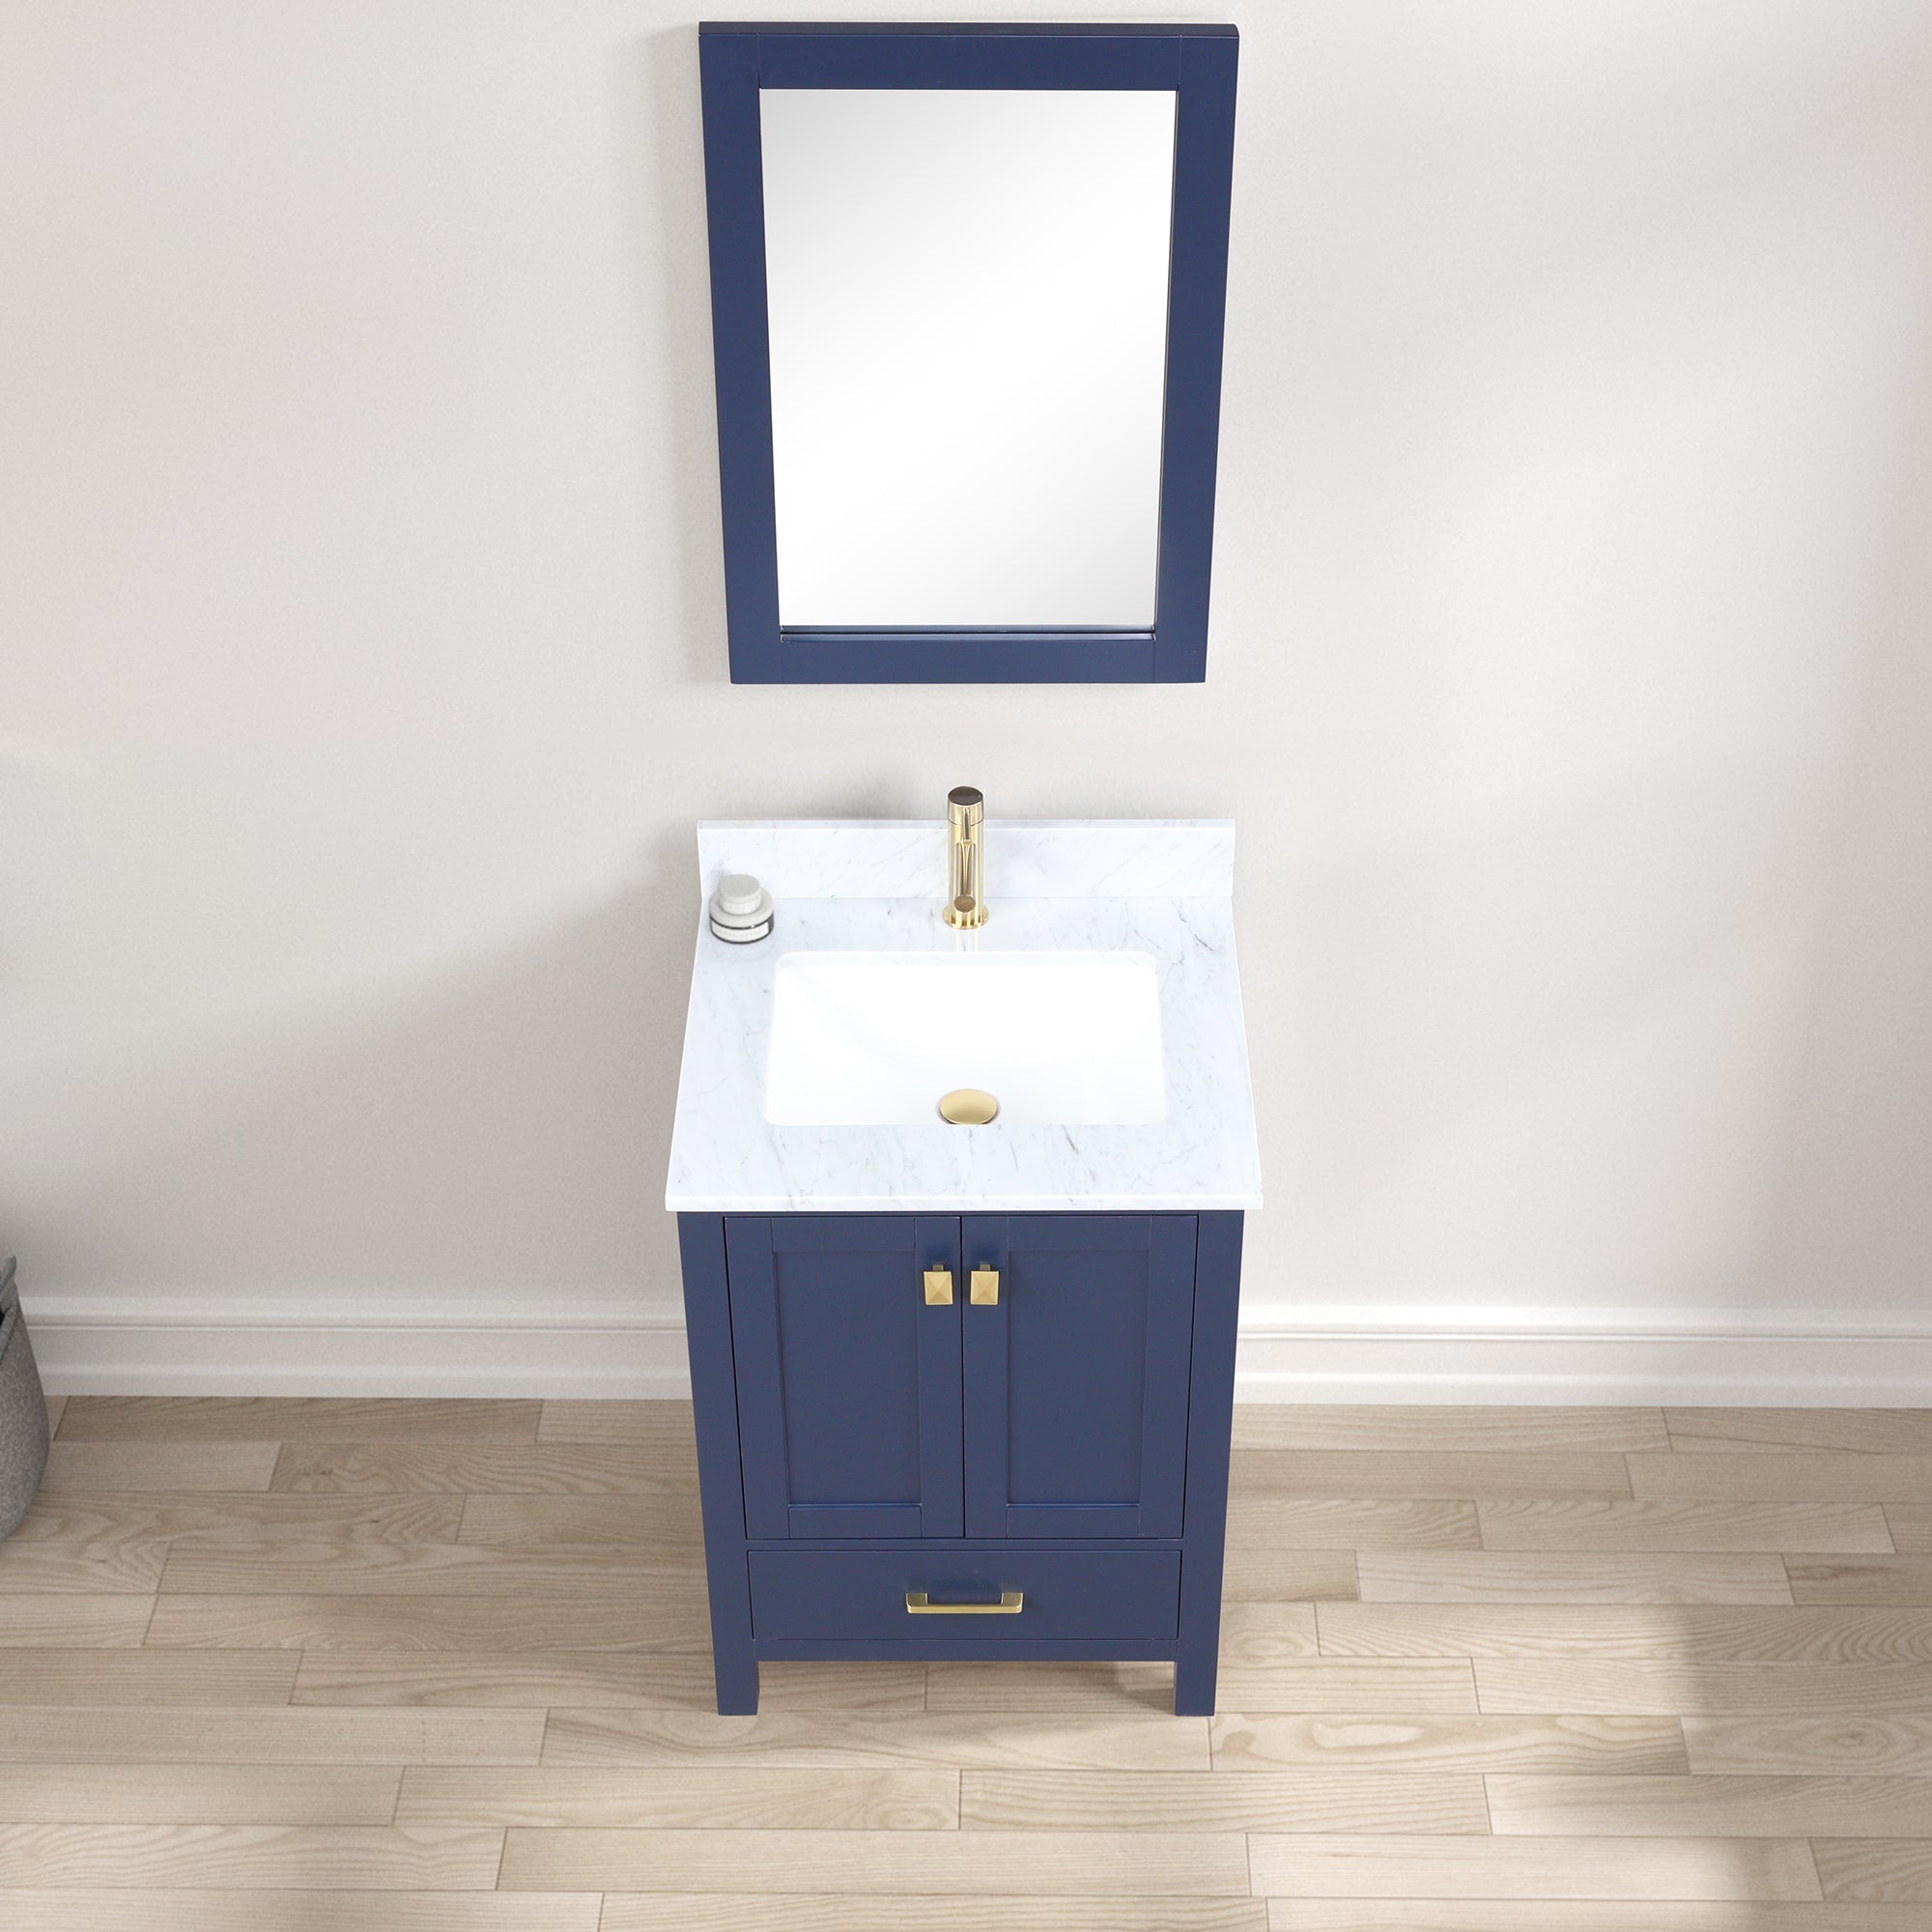 Geneva 24" Bathroom Vanity with Marble Countertop - Contemporary Bathroom Vanity